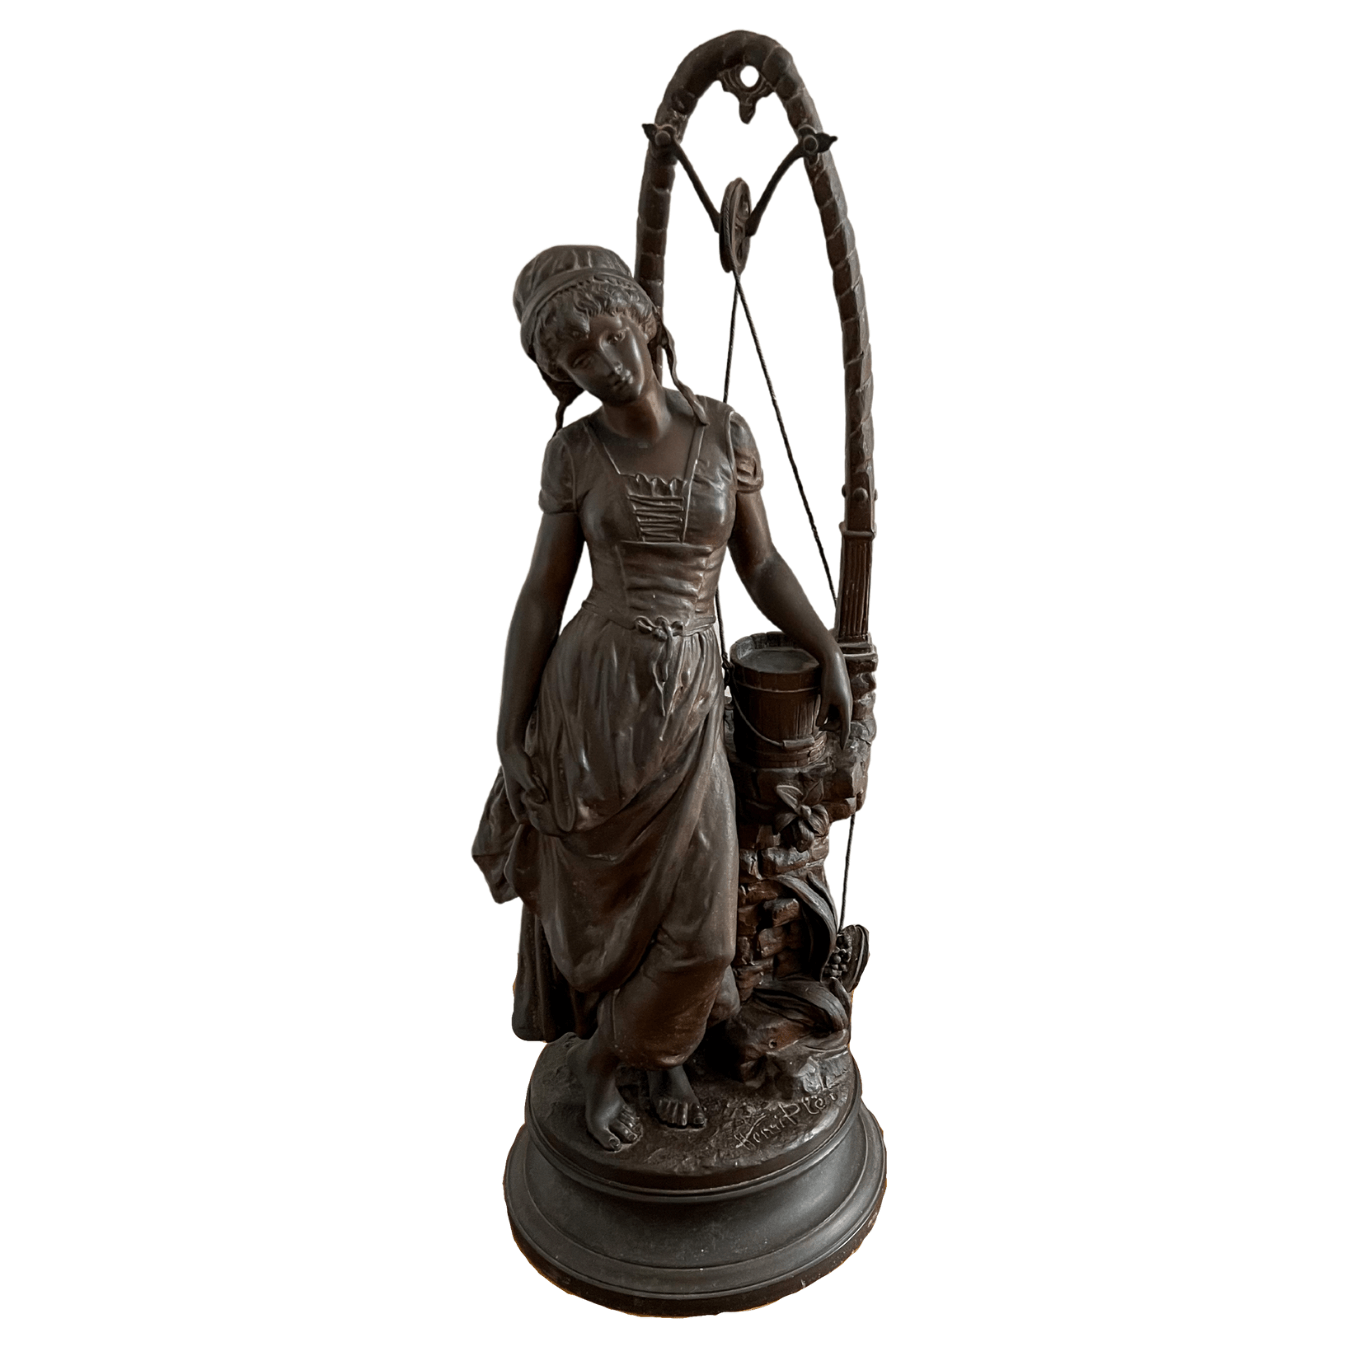 Escultura "Jeune fille au puits" de Henri Plé do século XIX